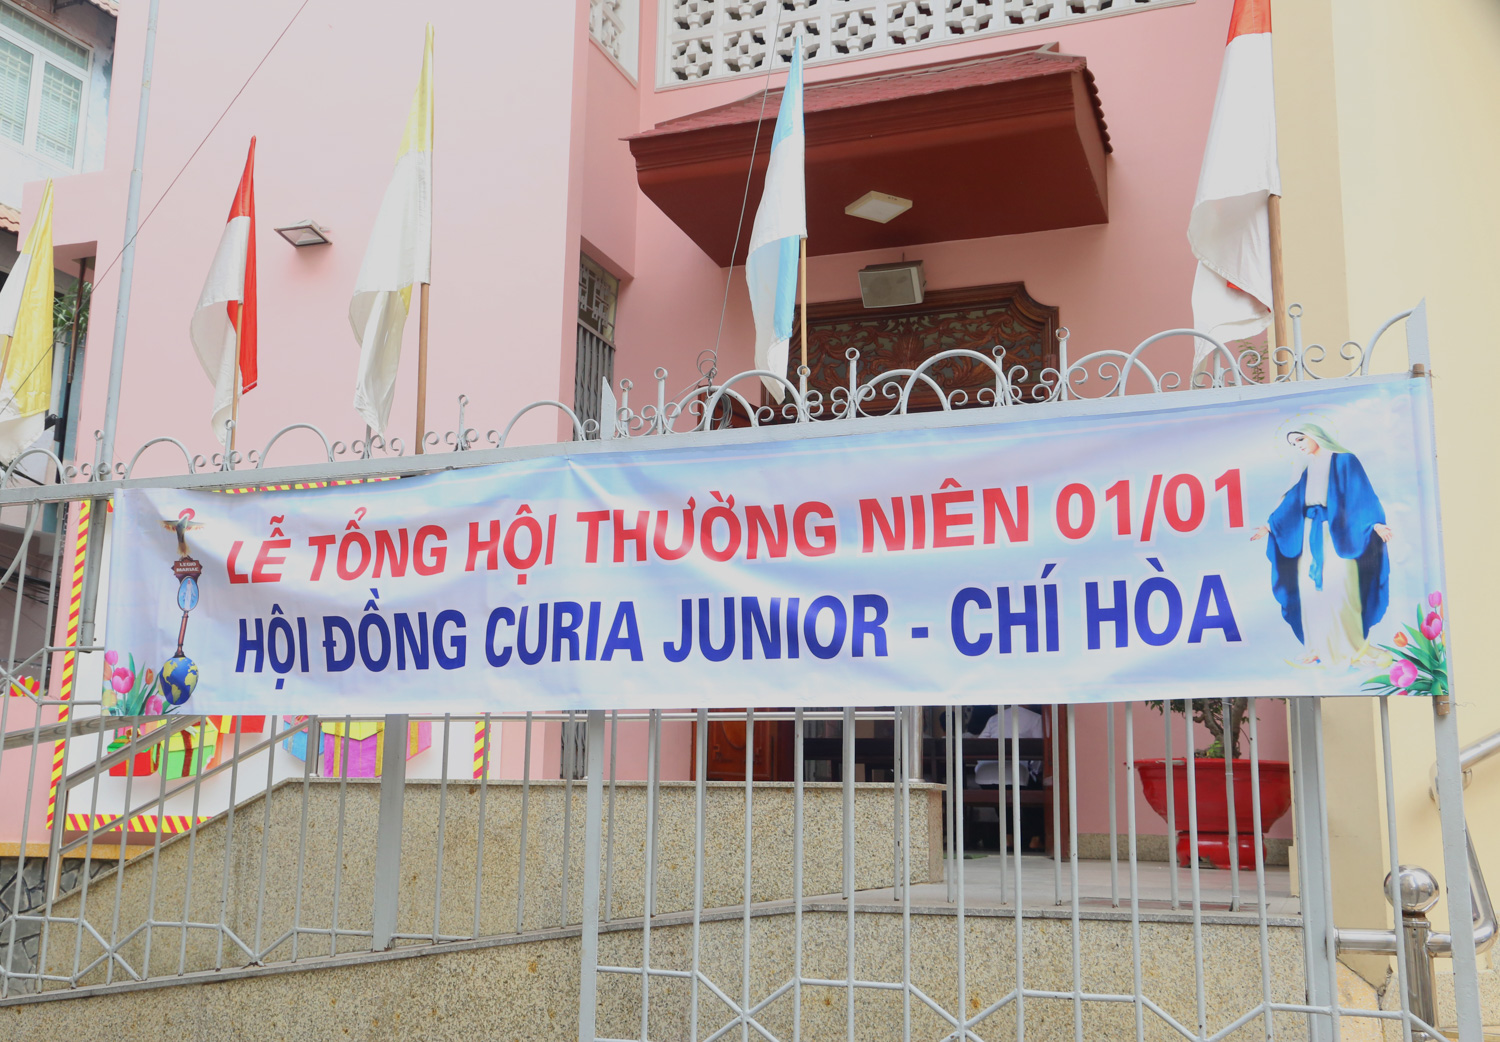 Giáo xứ Nam Thái: Hội đồng Curia Junior Chí Hòa II tổ chức Tổng Hội Thường niên ngày 1-1-2021